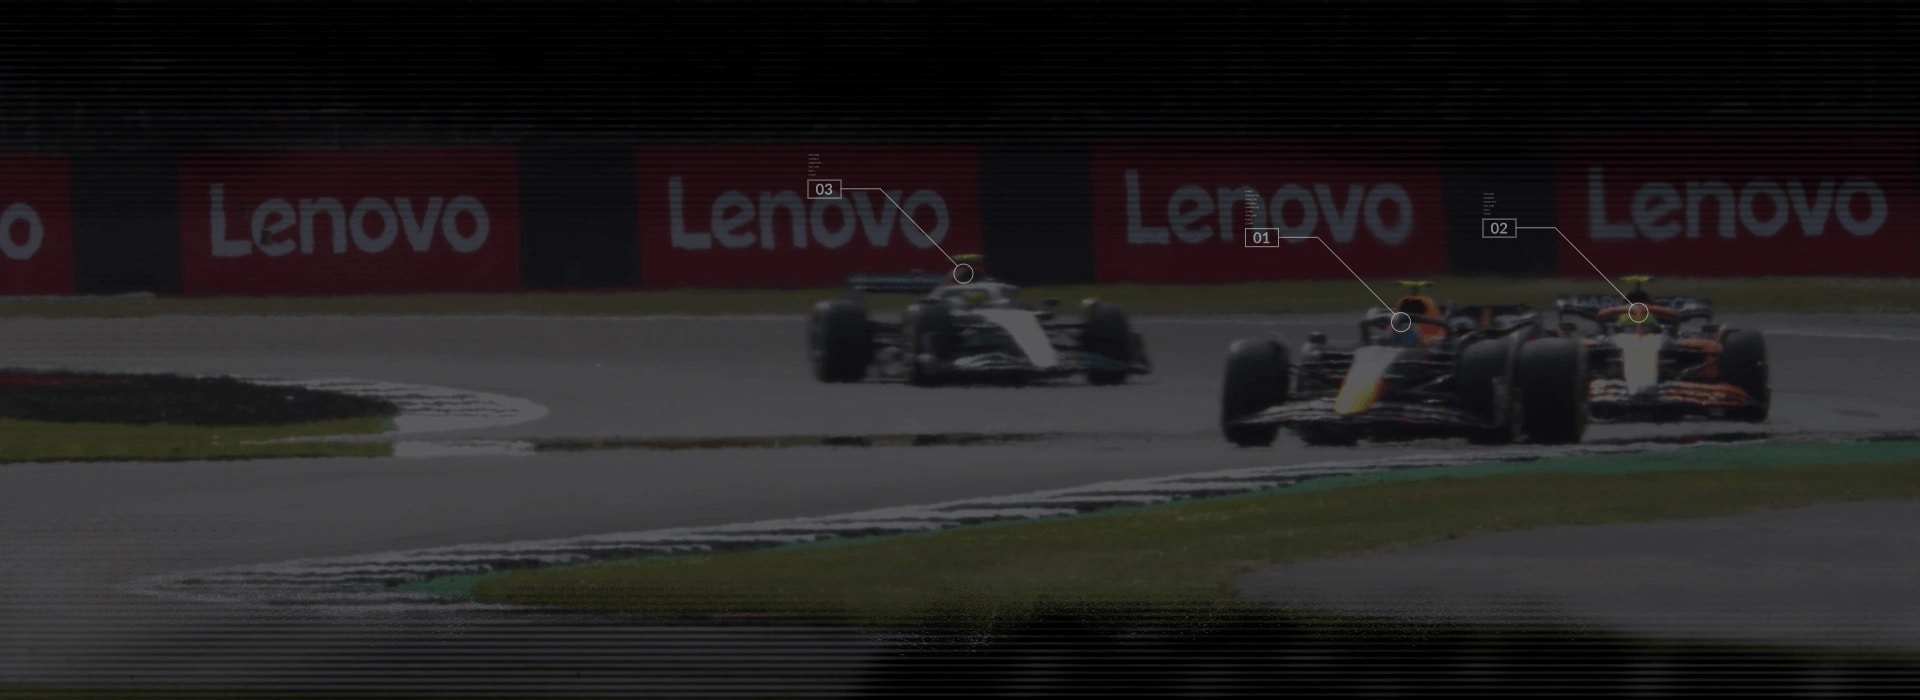 3 vozy F1 na závodní dráze s bannery Lenovo v pozadí